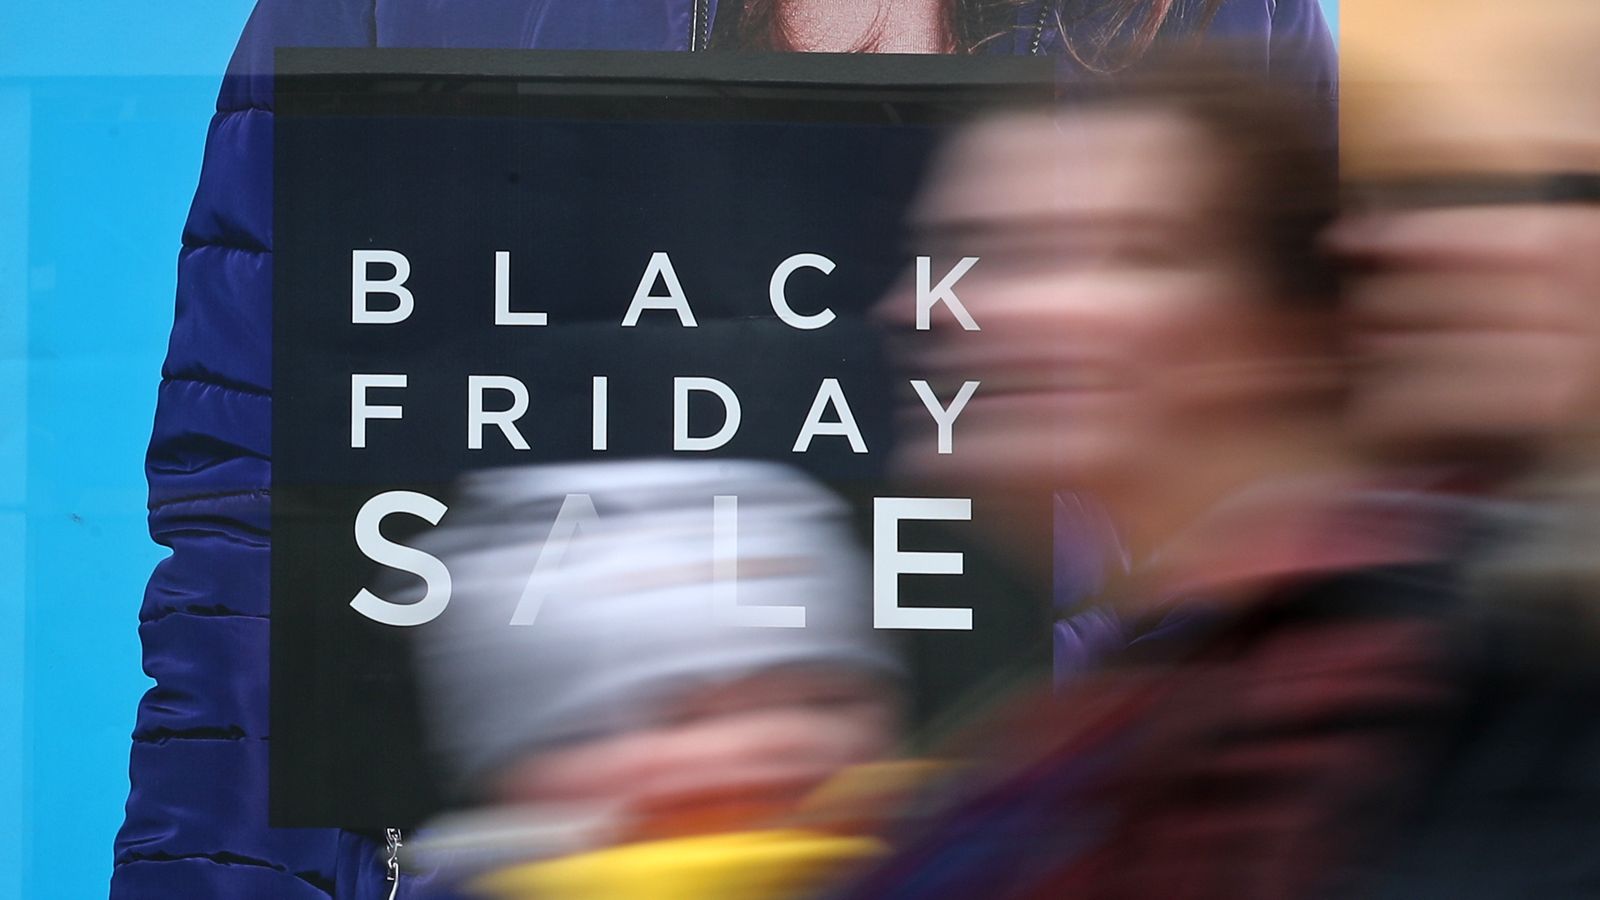 К Черной пятнице «следует относиться с долей скептицизма» — Consumer Group |  Деловые новости